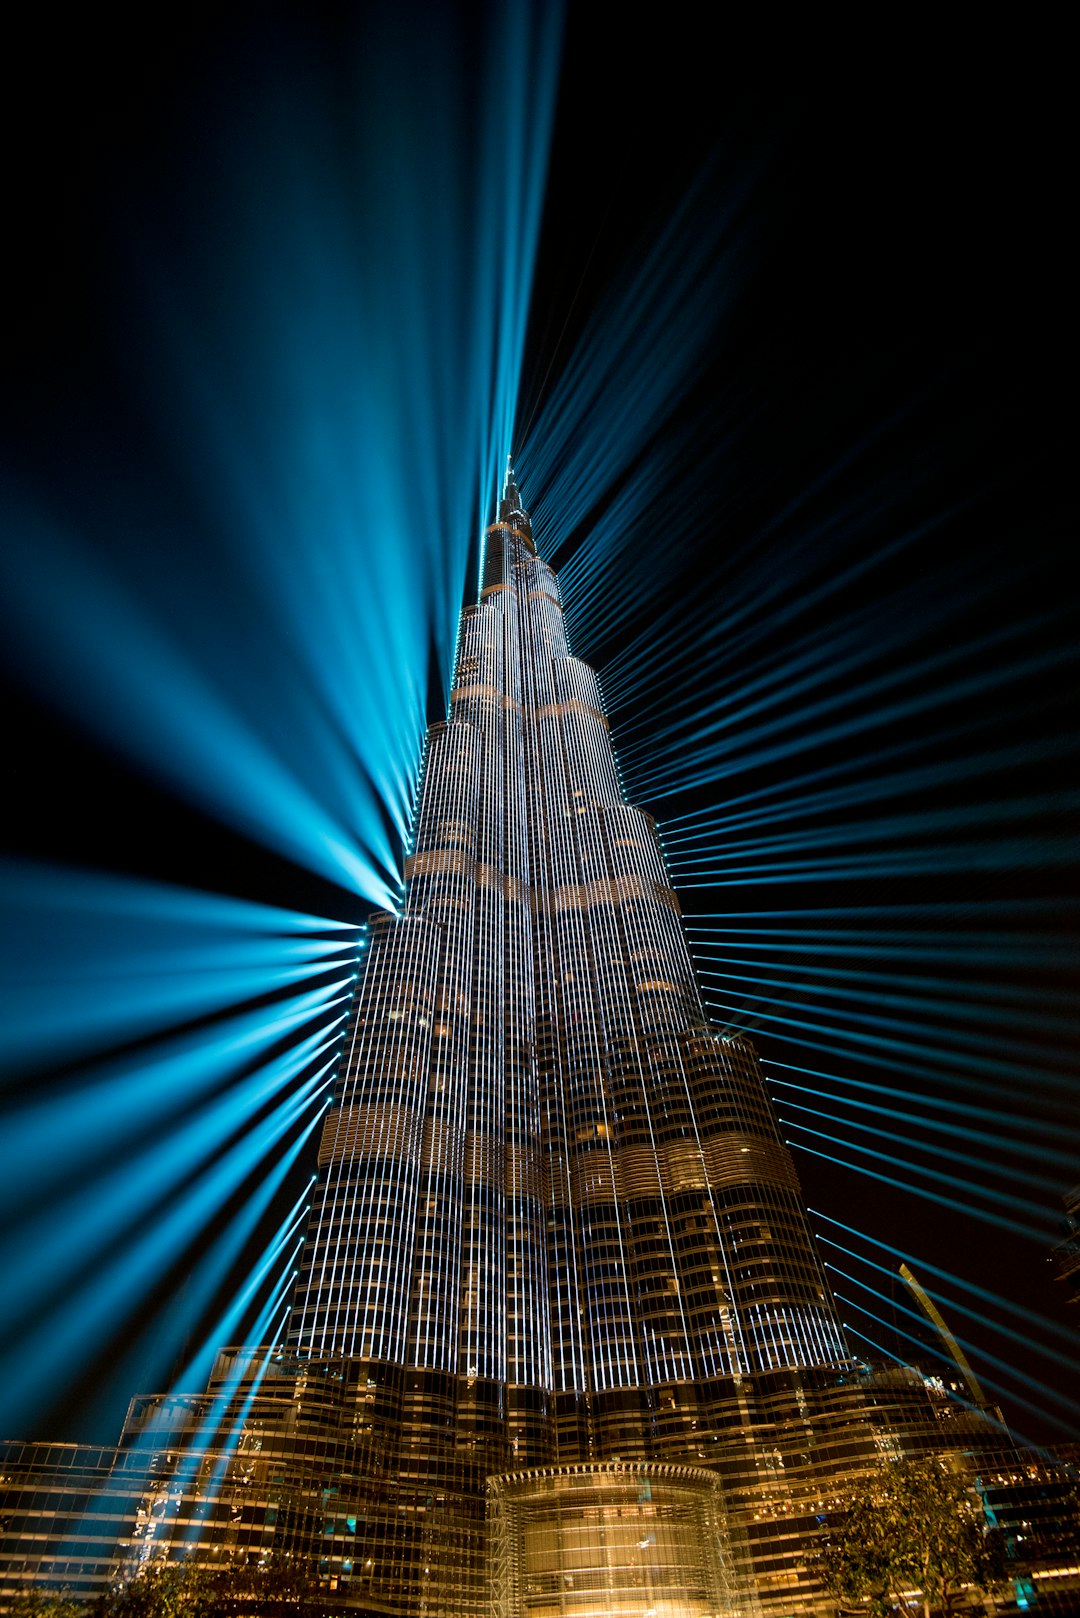 Landmark photo spot Burj Khalifa Sharjah - United Arab Emirates